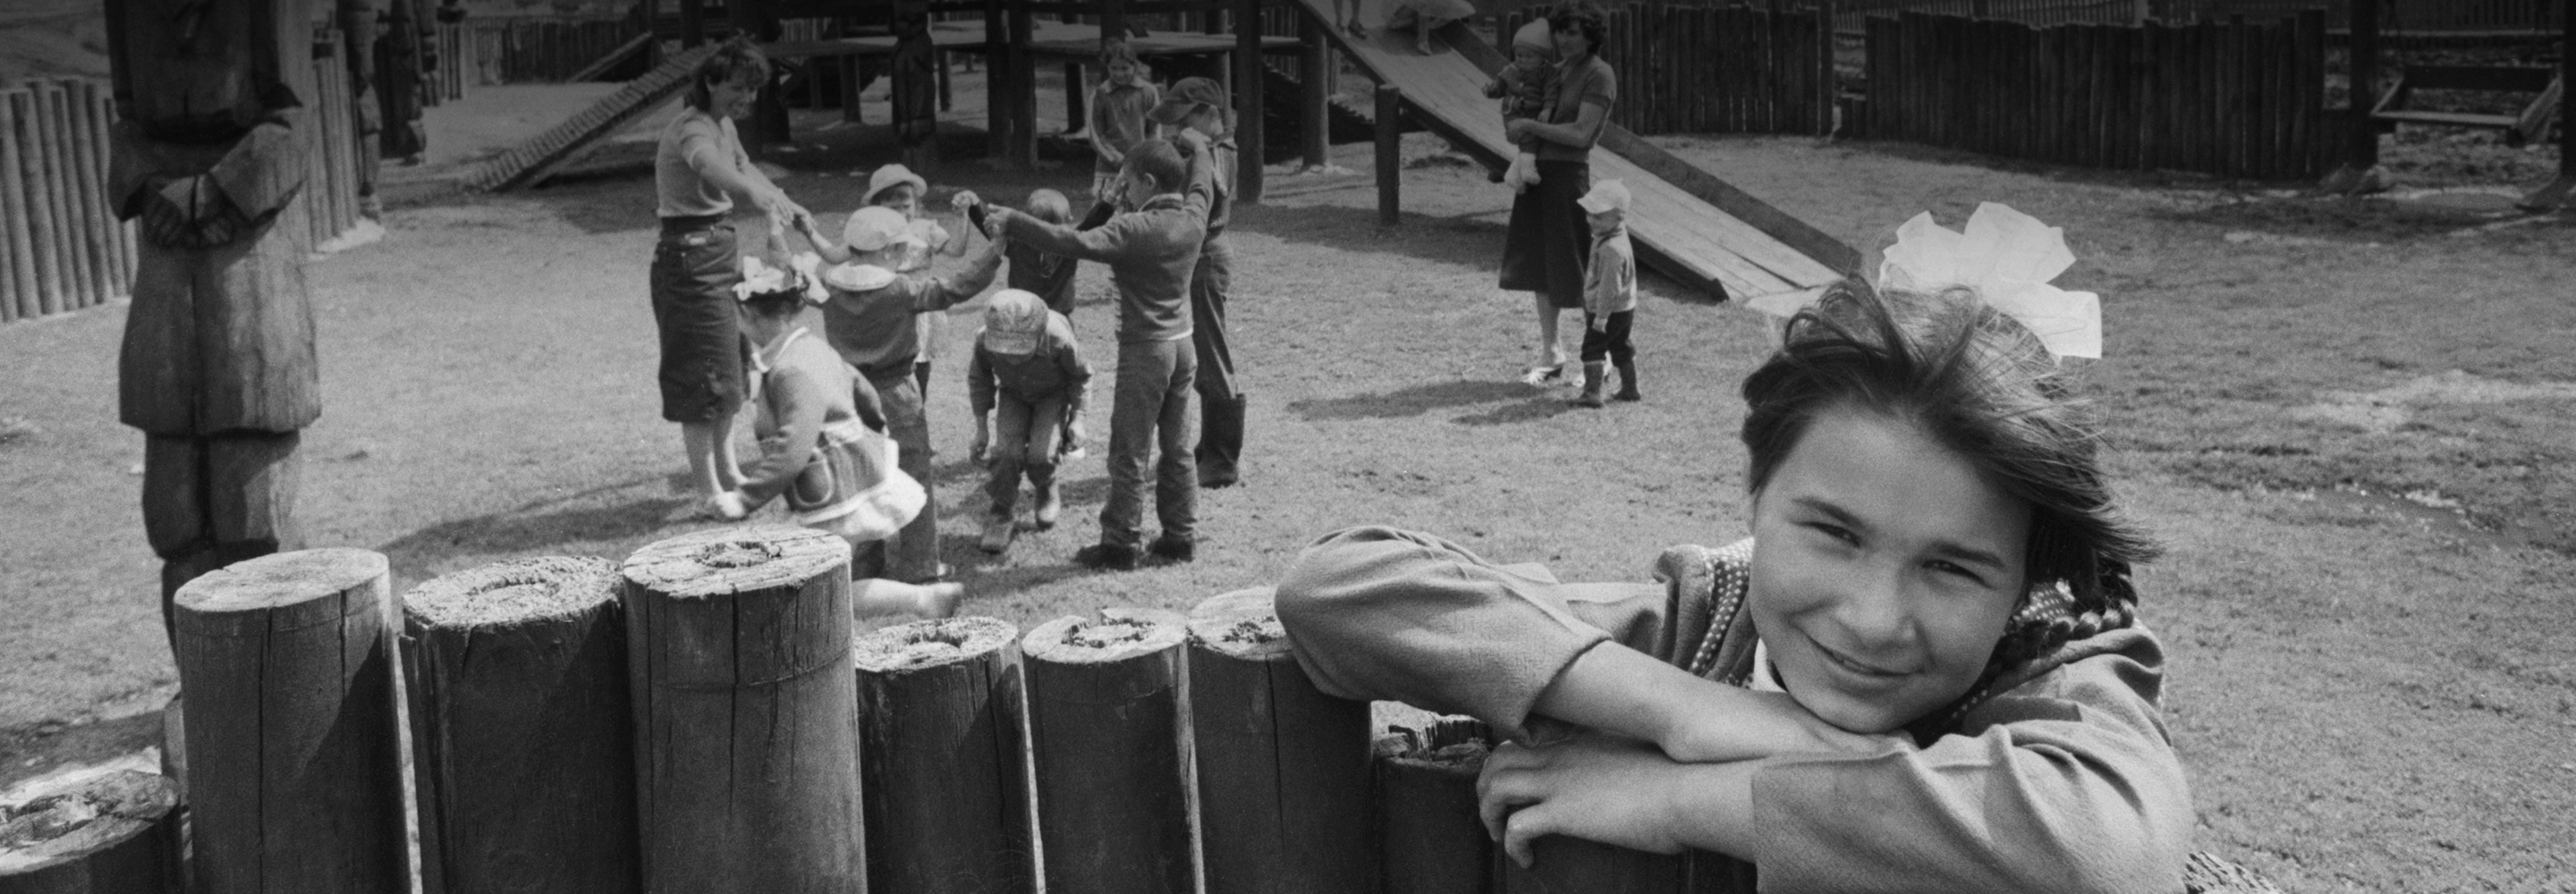 10 дворовых игр времен СССР, которым можно научить современных детей